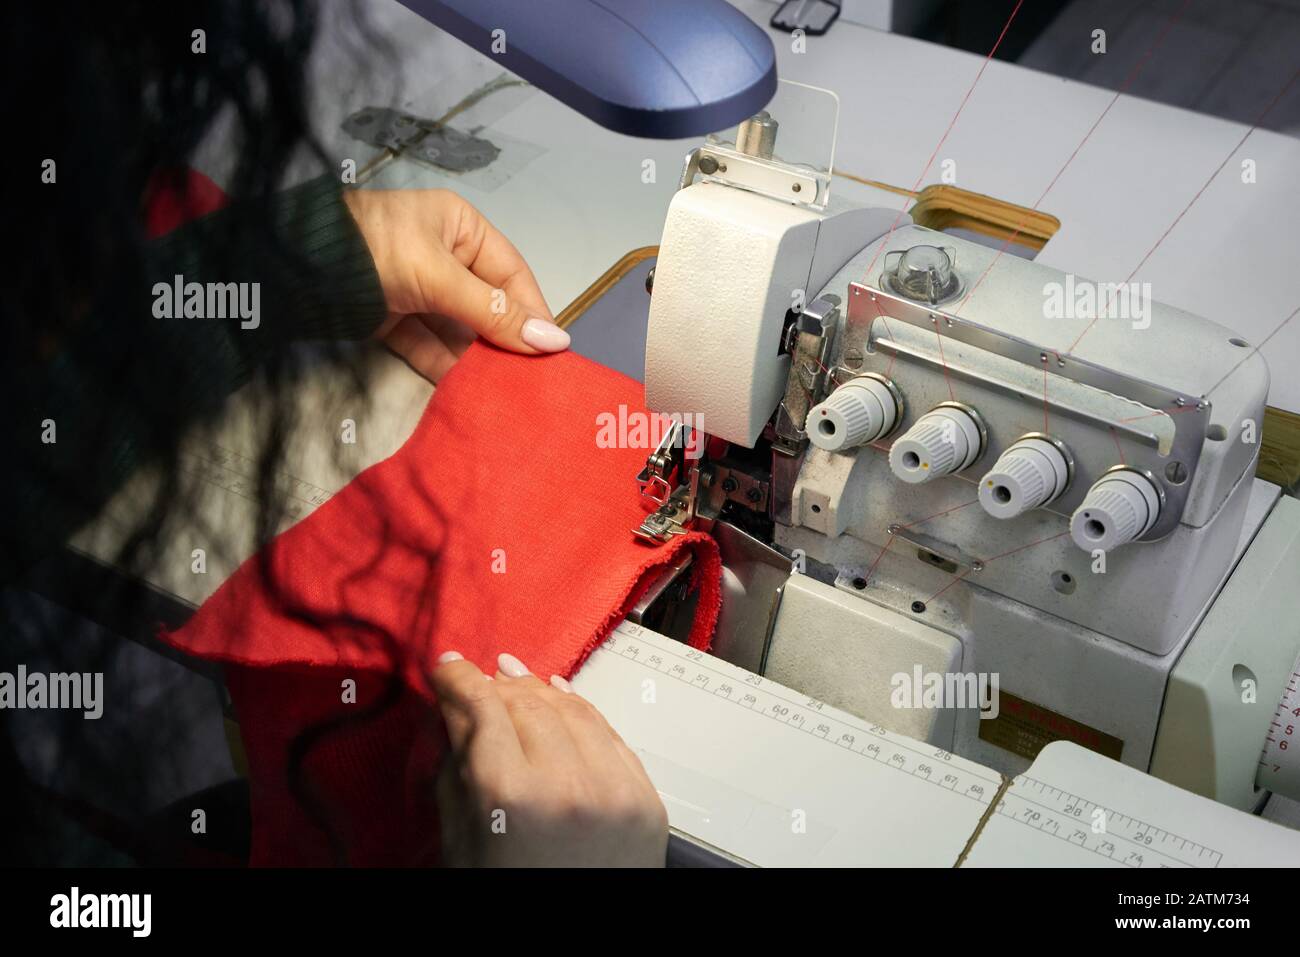 Giovane donna che usa una macchina da cucire da overlock professionale in officina. Attrezzatura per bordare, bordare o cucire abiti presso il negozio di sarti Foto Stock